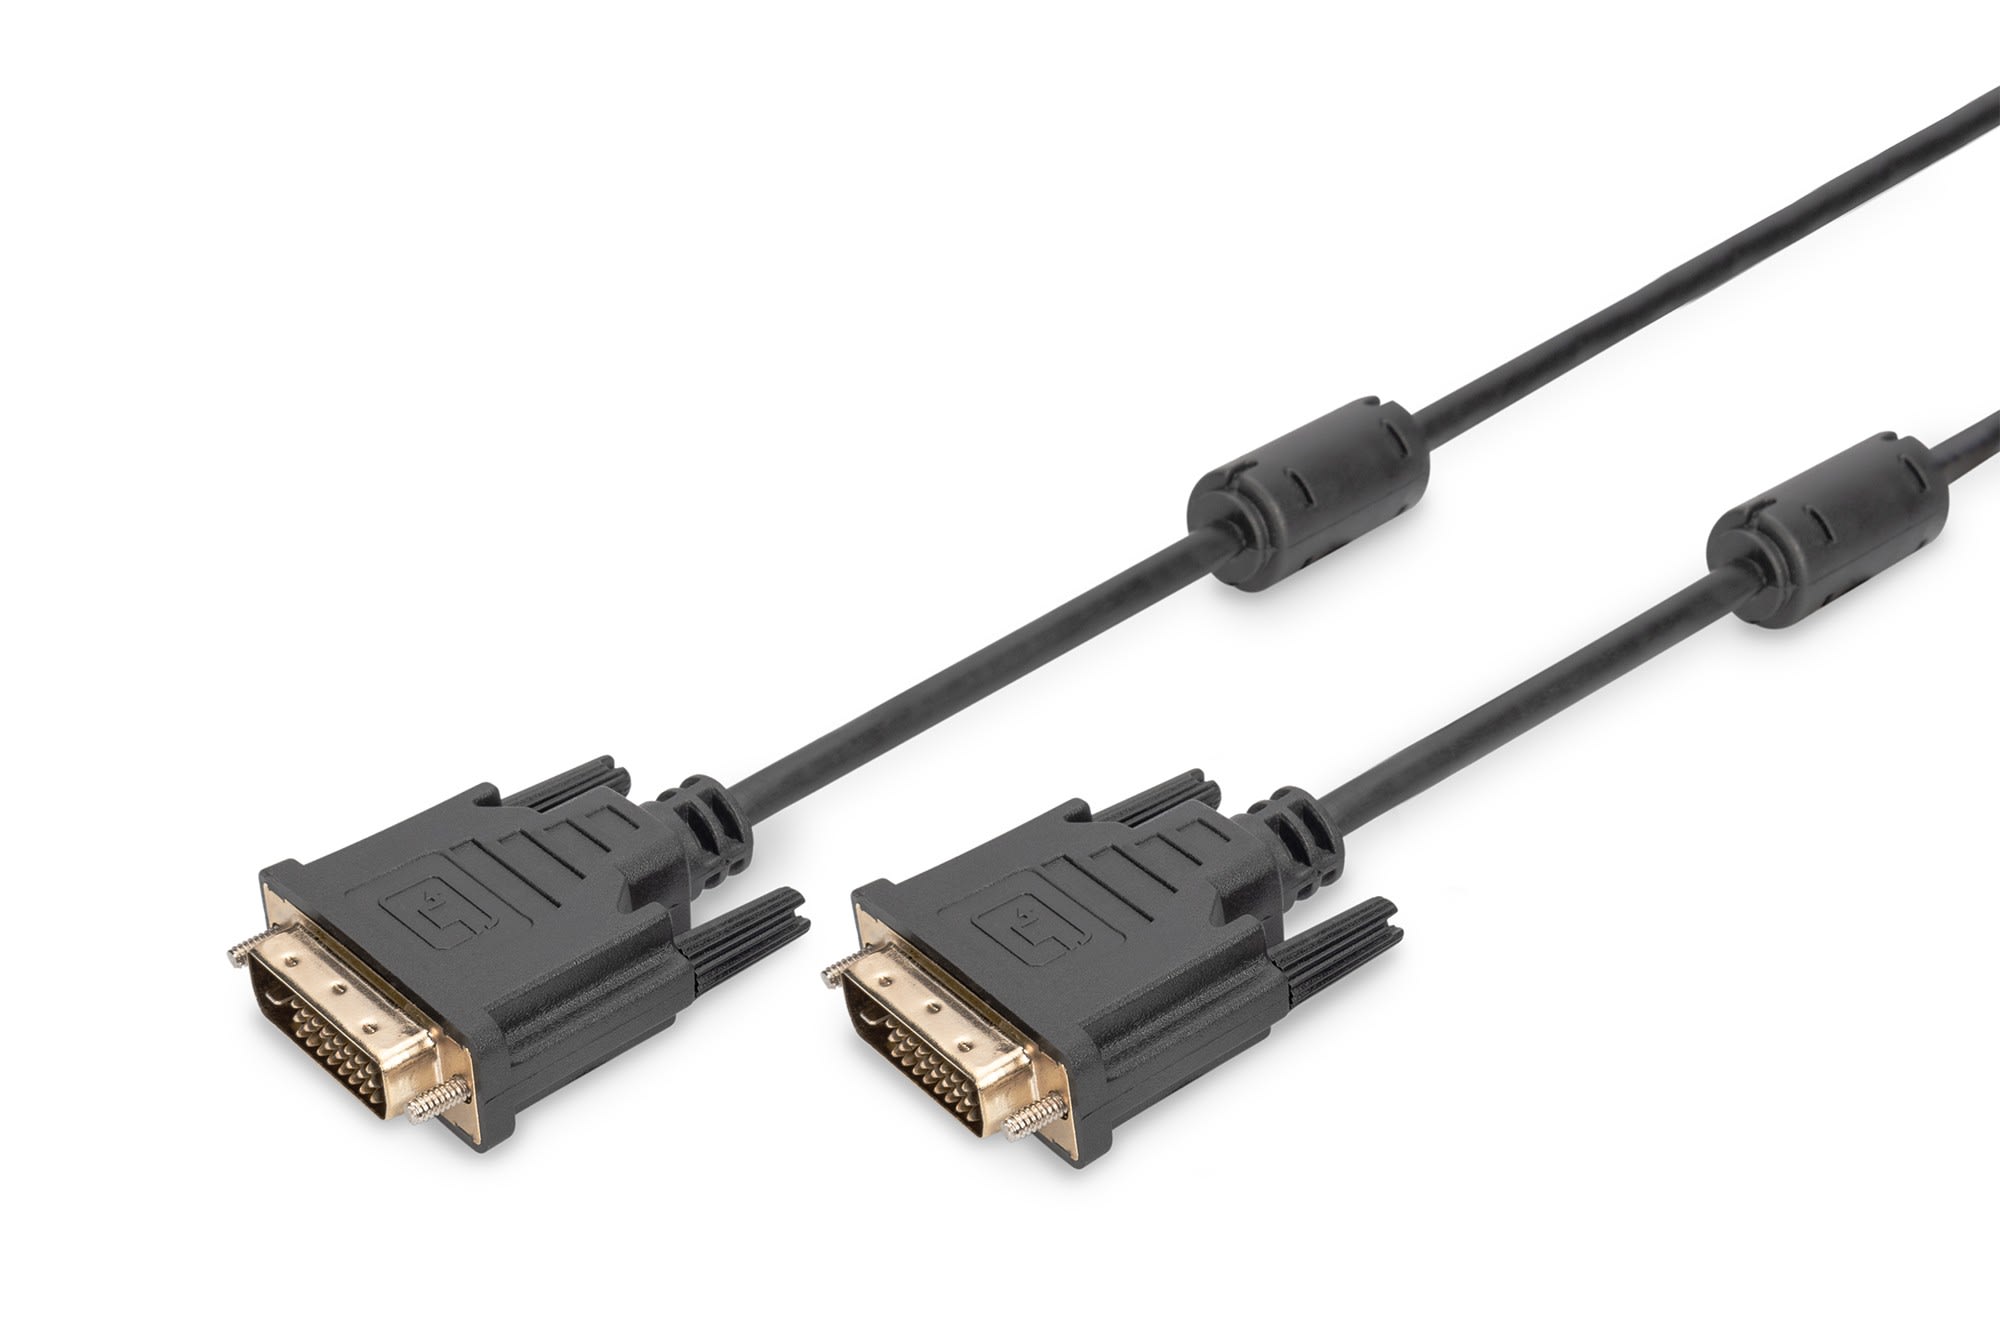 Assmann Electronic - DVI connection cable, DVI(24+1) M-M, 3.0m, DVI-D Dual Link, bl